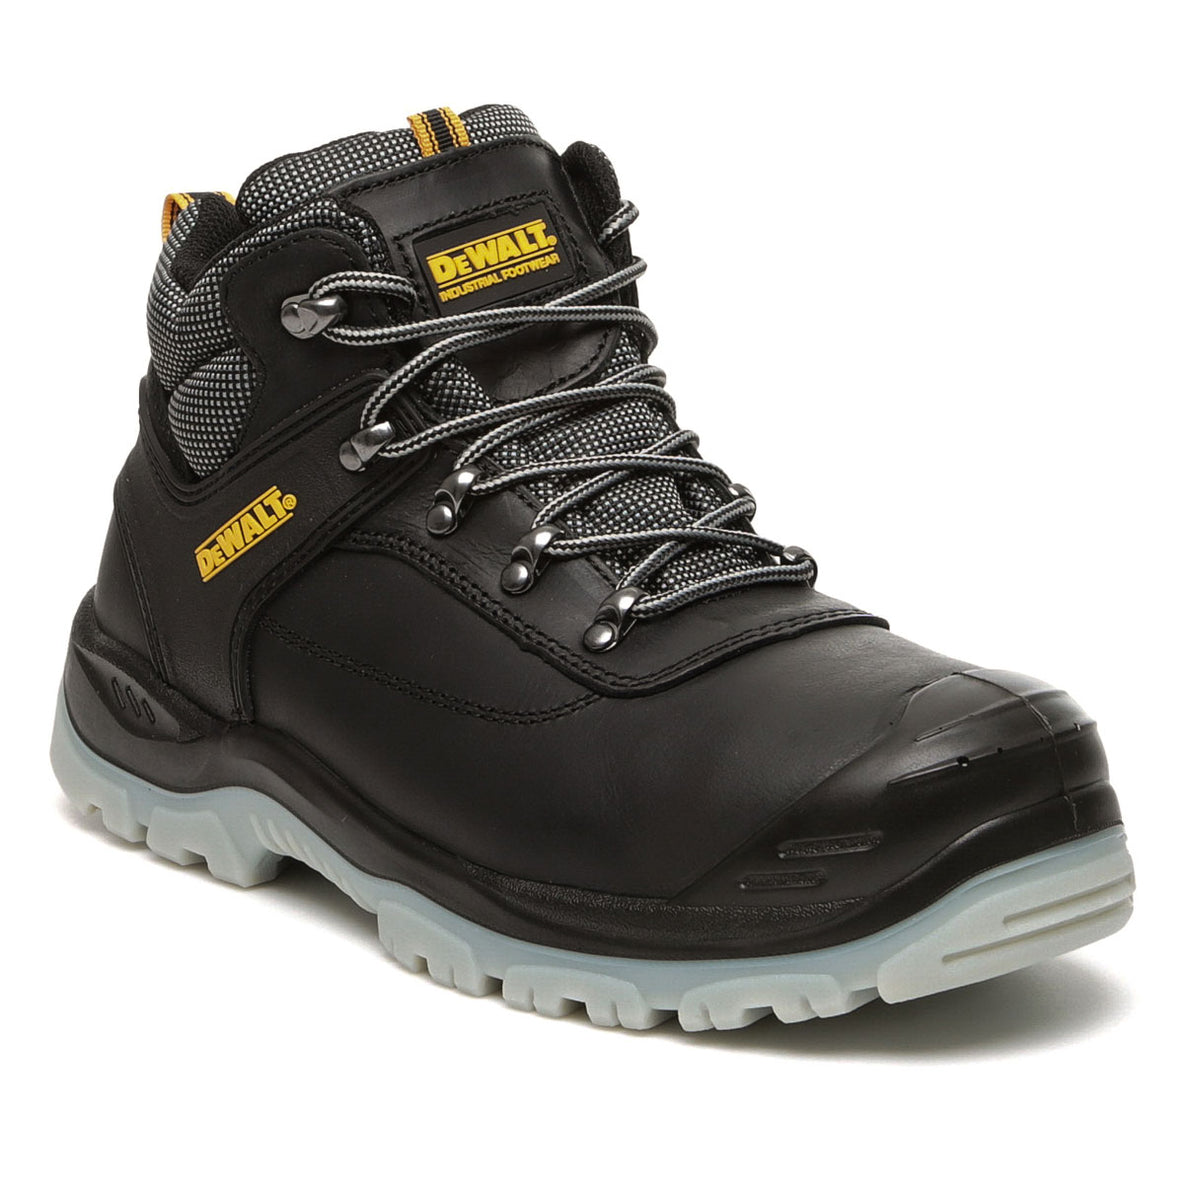 DeWalt Laser Safety Hiker Boots in Black